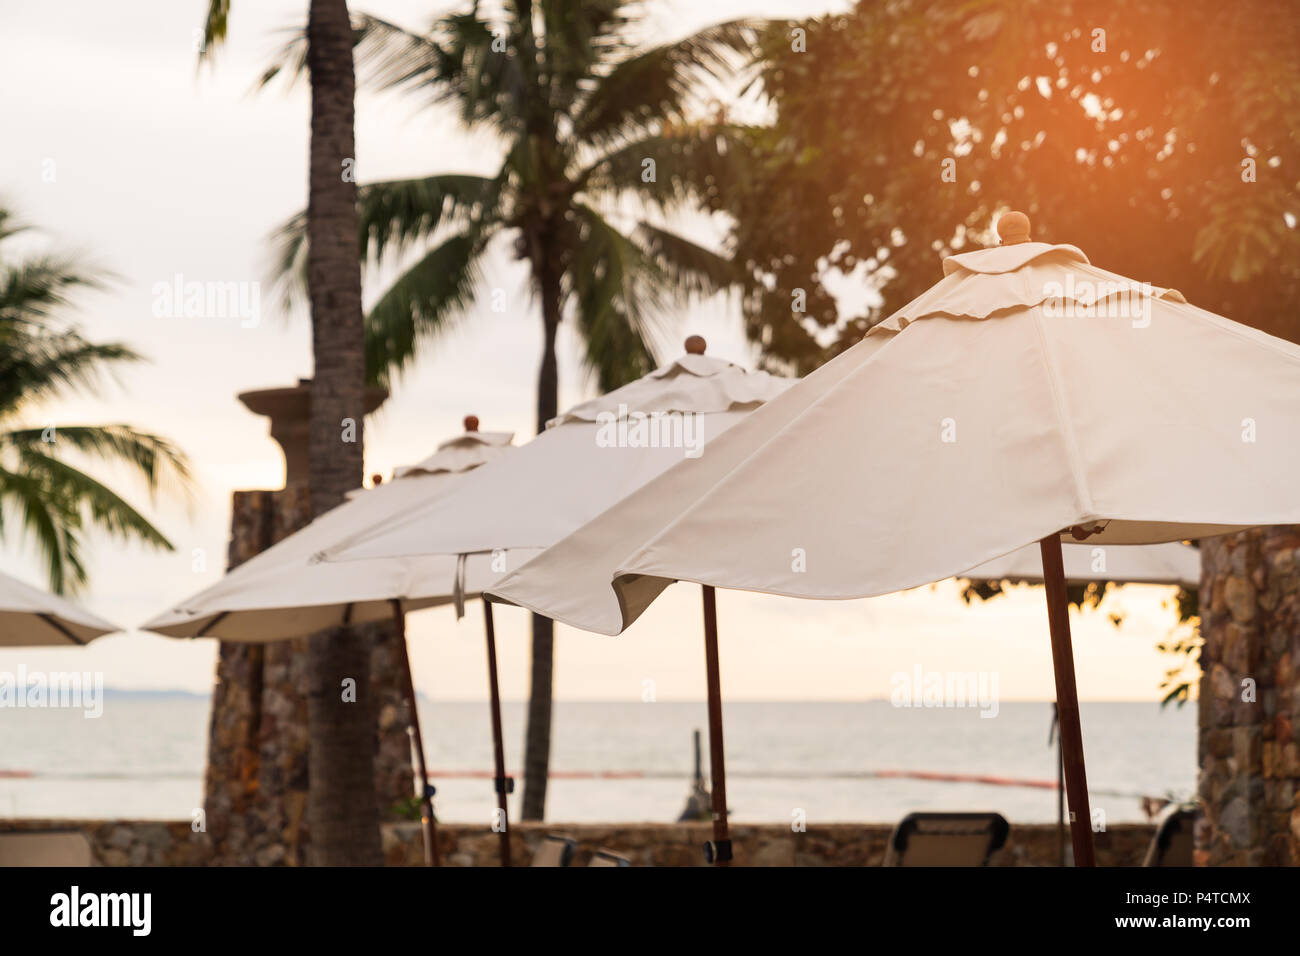 Lagre des parasols sur la plage de Sunset, locations de vacances resort concepts. Banque D'Images